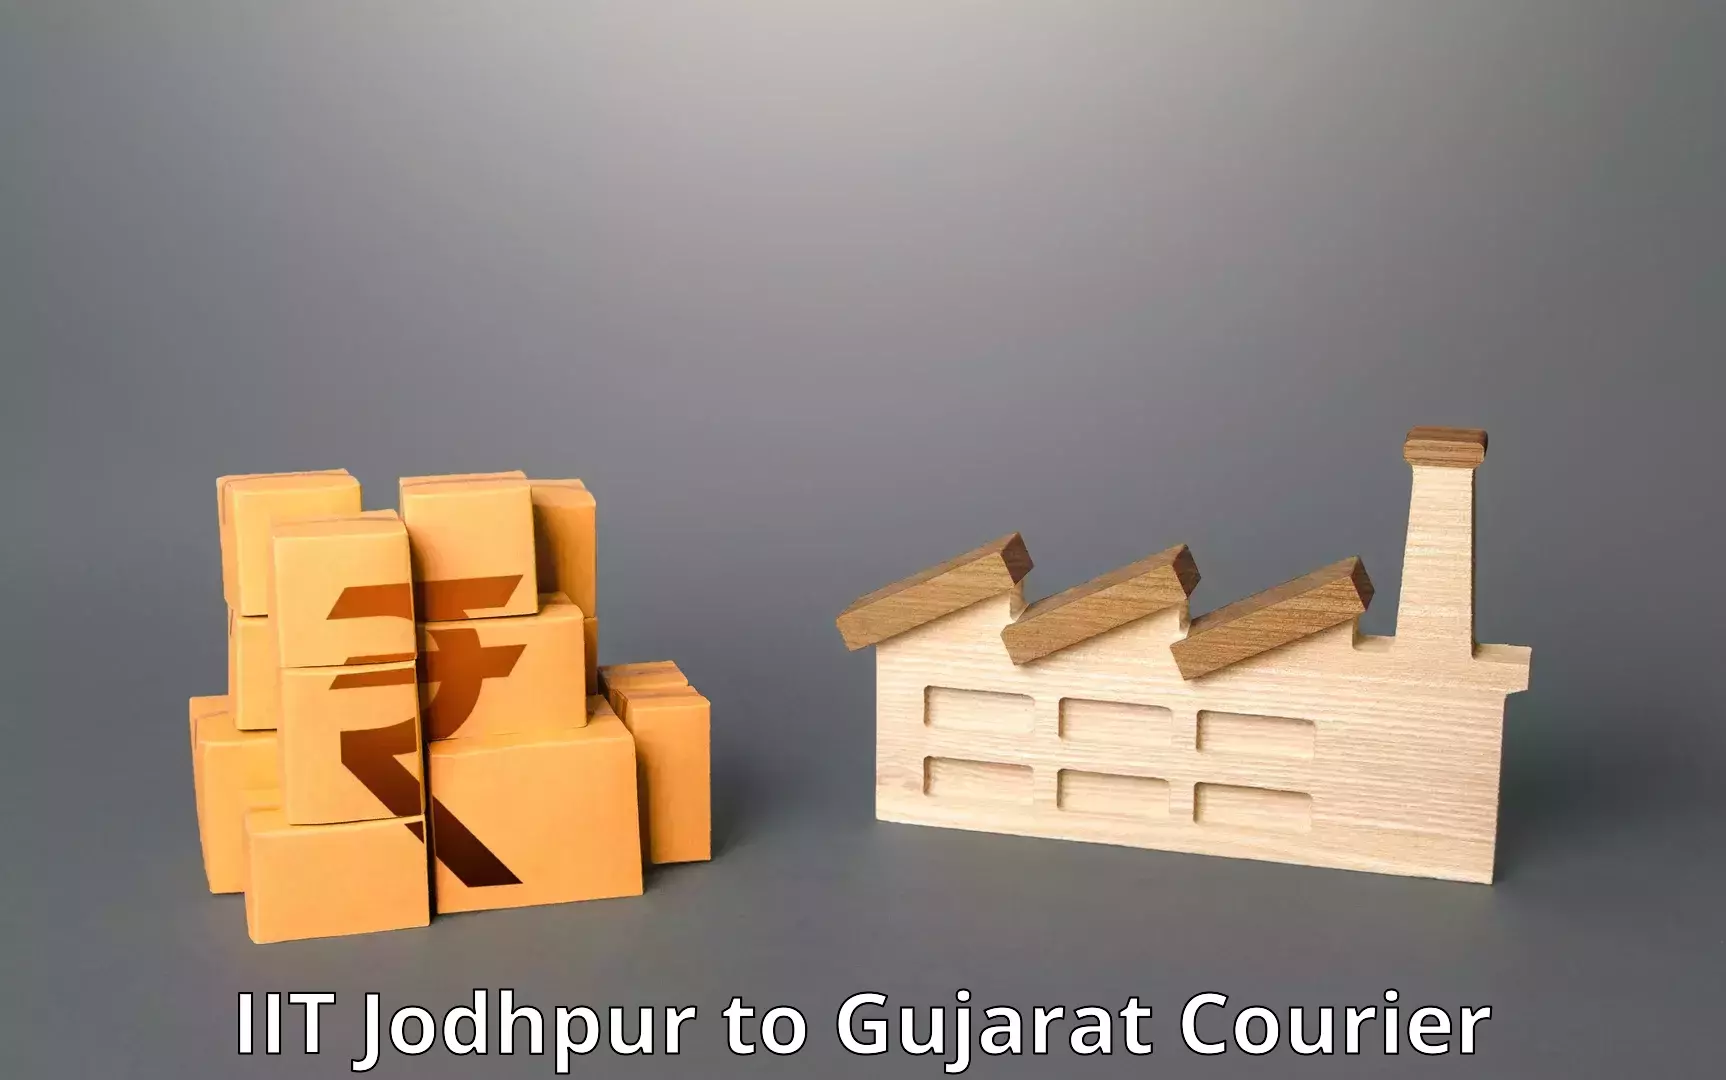 Customer-centric shipping in IIT Jodhpur to Gujarat